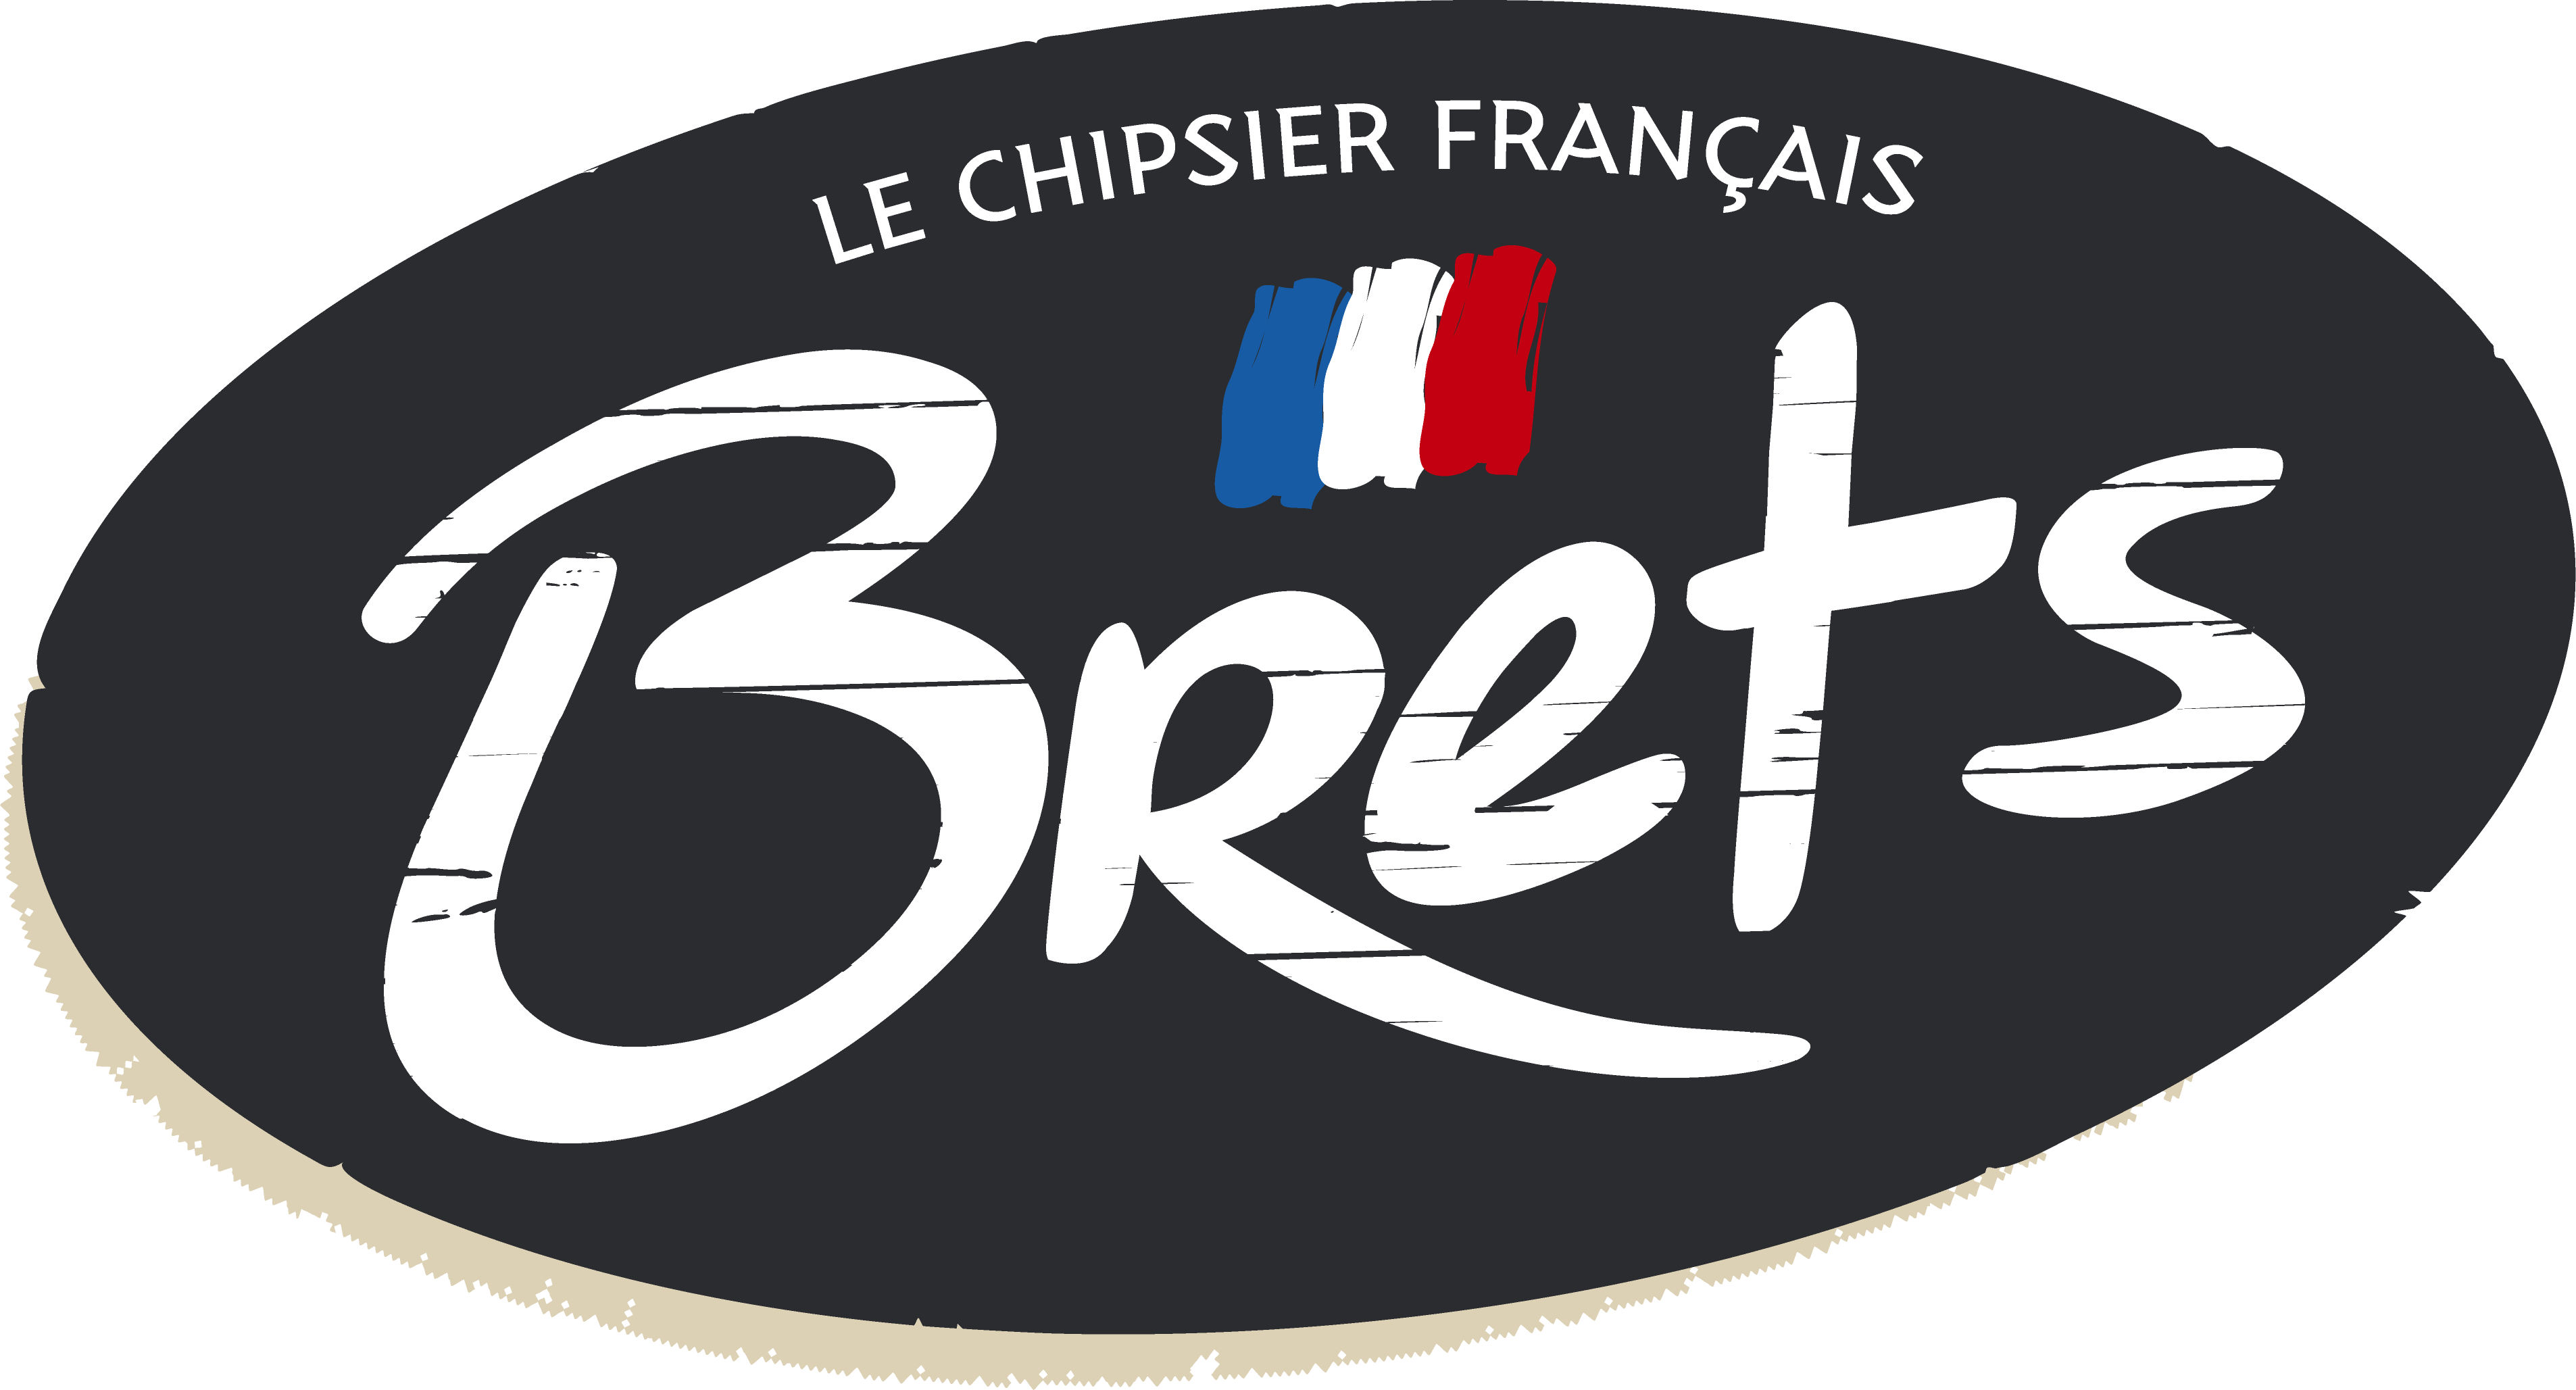 Chips Brets La Paysanne - Bret's - Le chipsier français